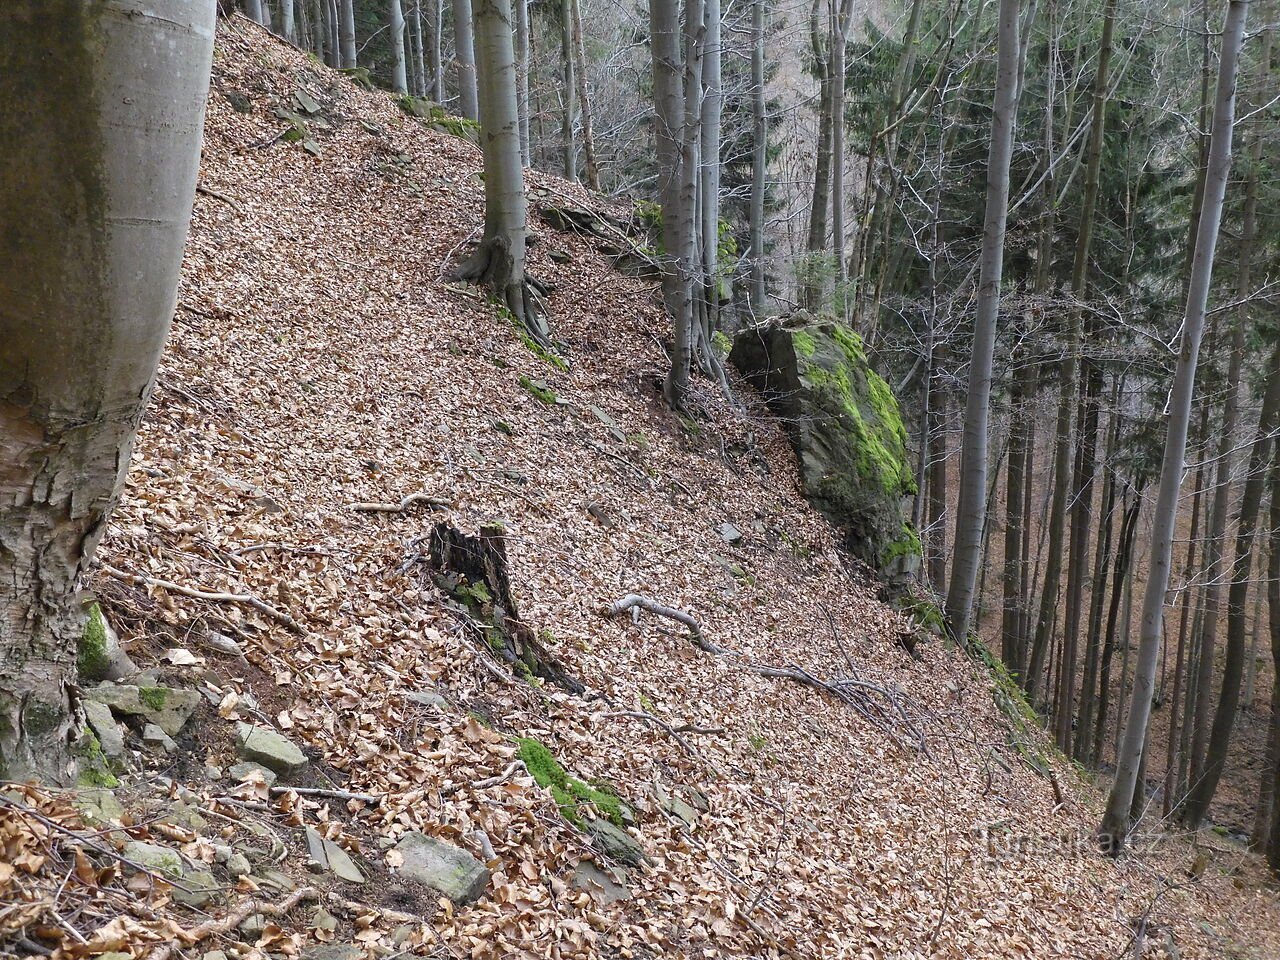 Interessantes formações rochosas e rochosas ao norte do cume Sulov - Mosty u Jablunkova, parte 4.